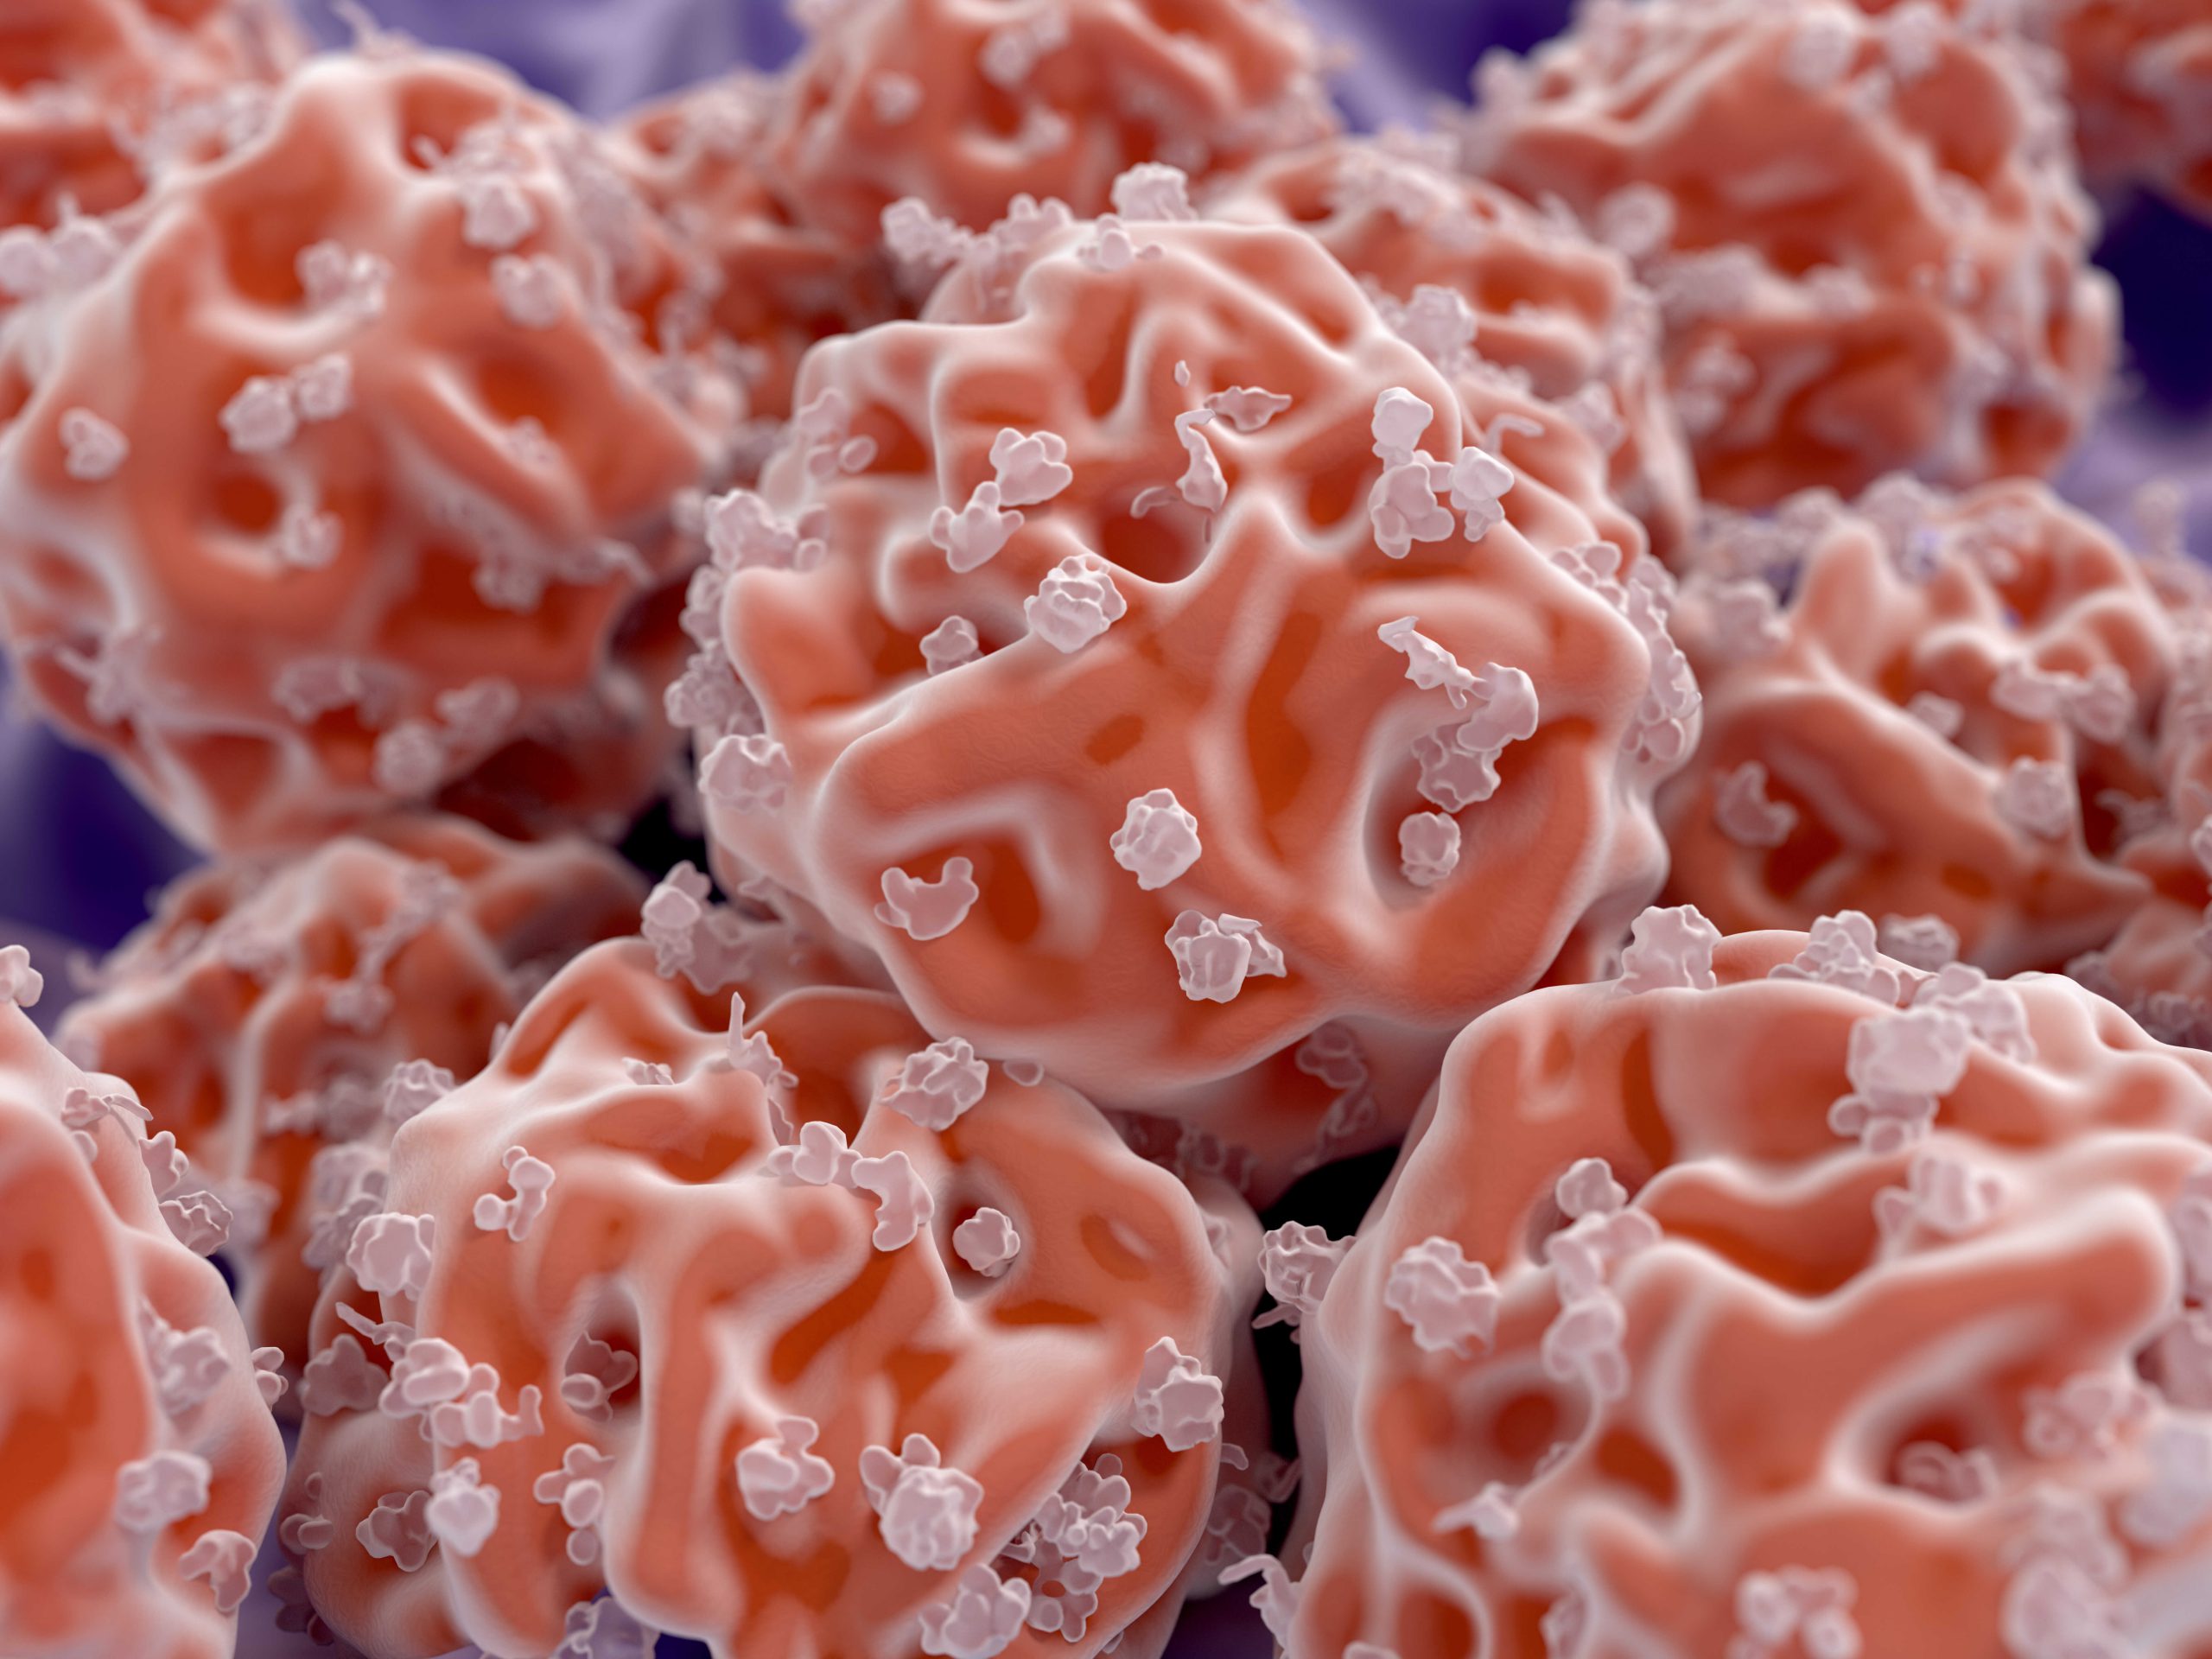 Zastosowanie komórek macierzystych pochodzących z tkanki tłuszczowej